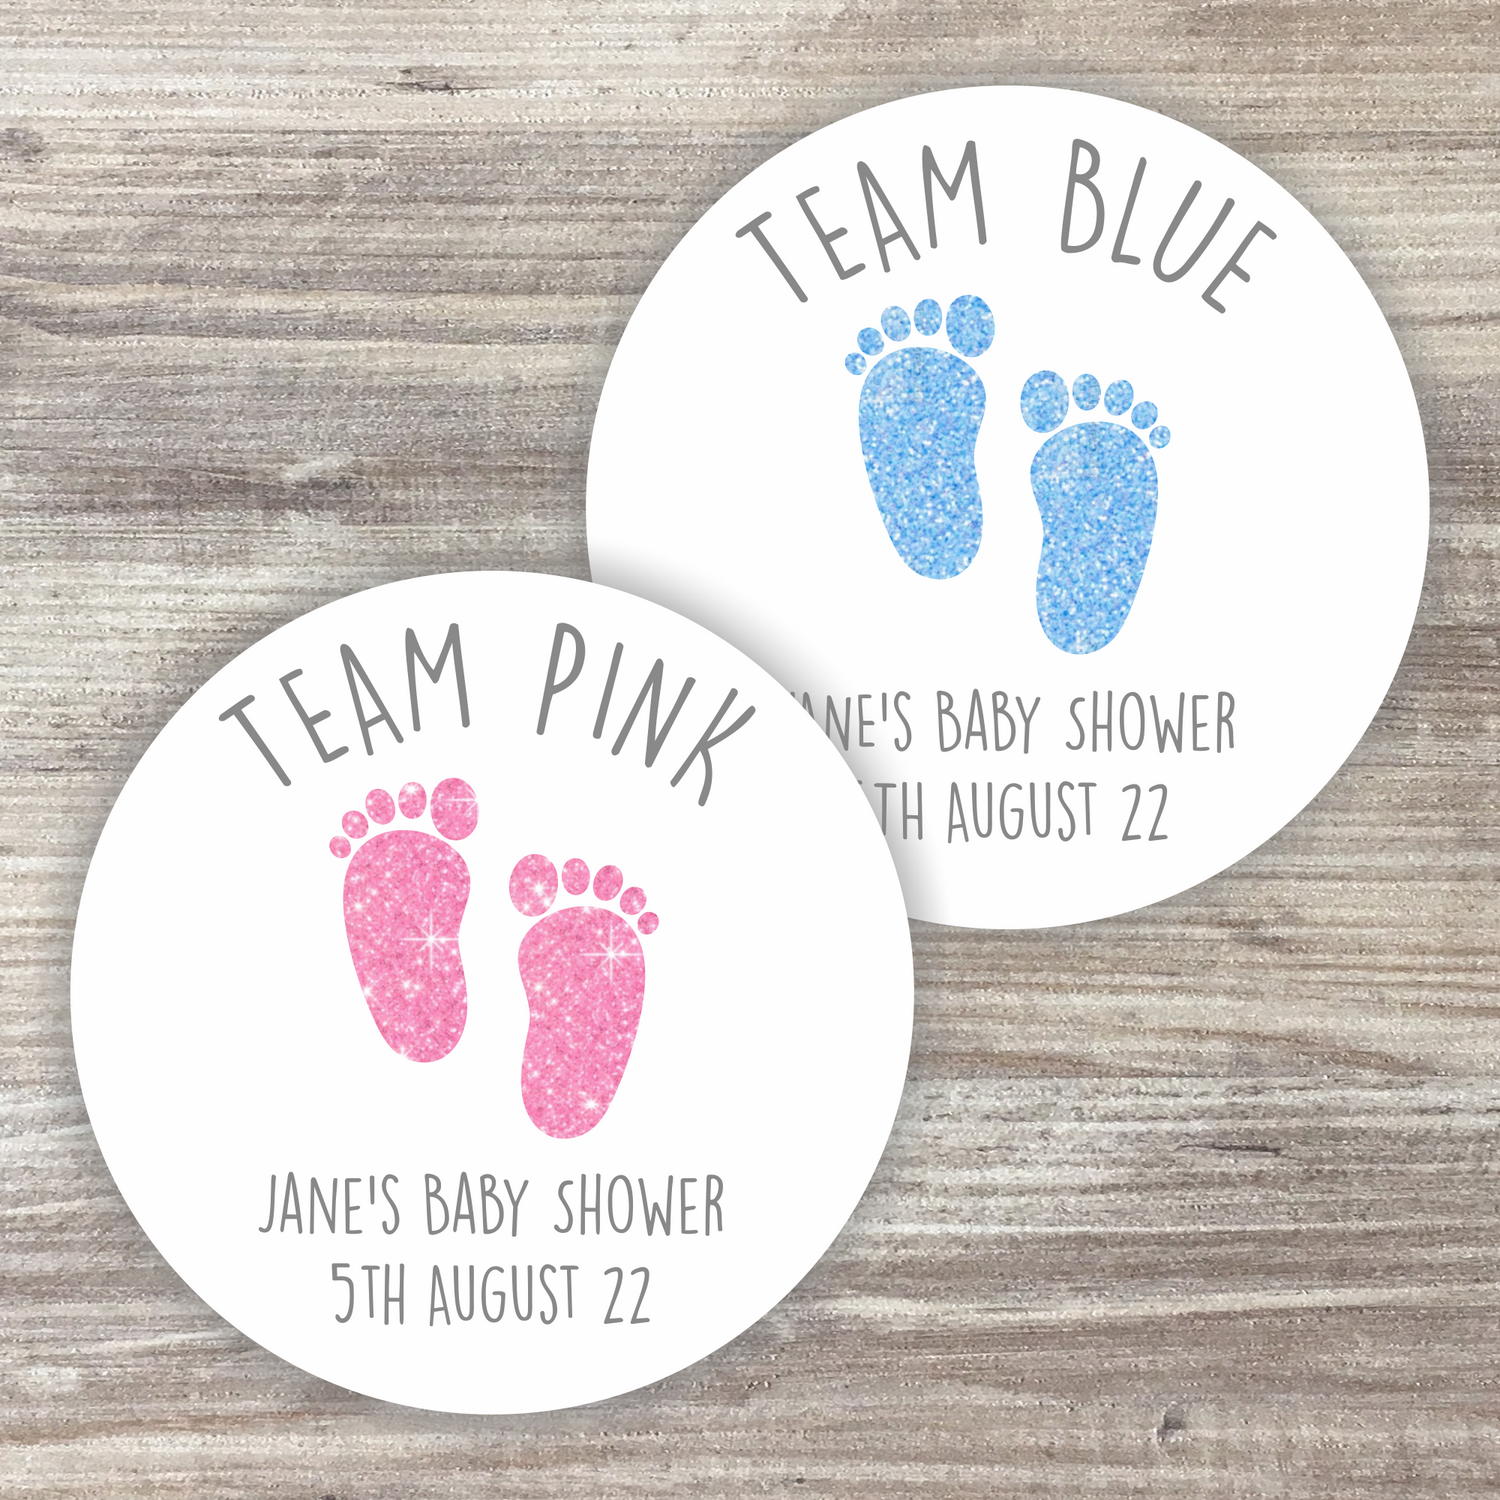 48 x Personalised Gender Reveal Stickers - Team Boy + Team Girl Footprints